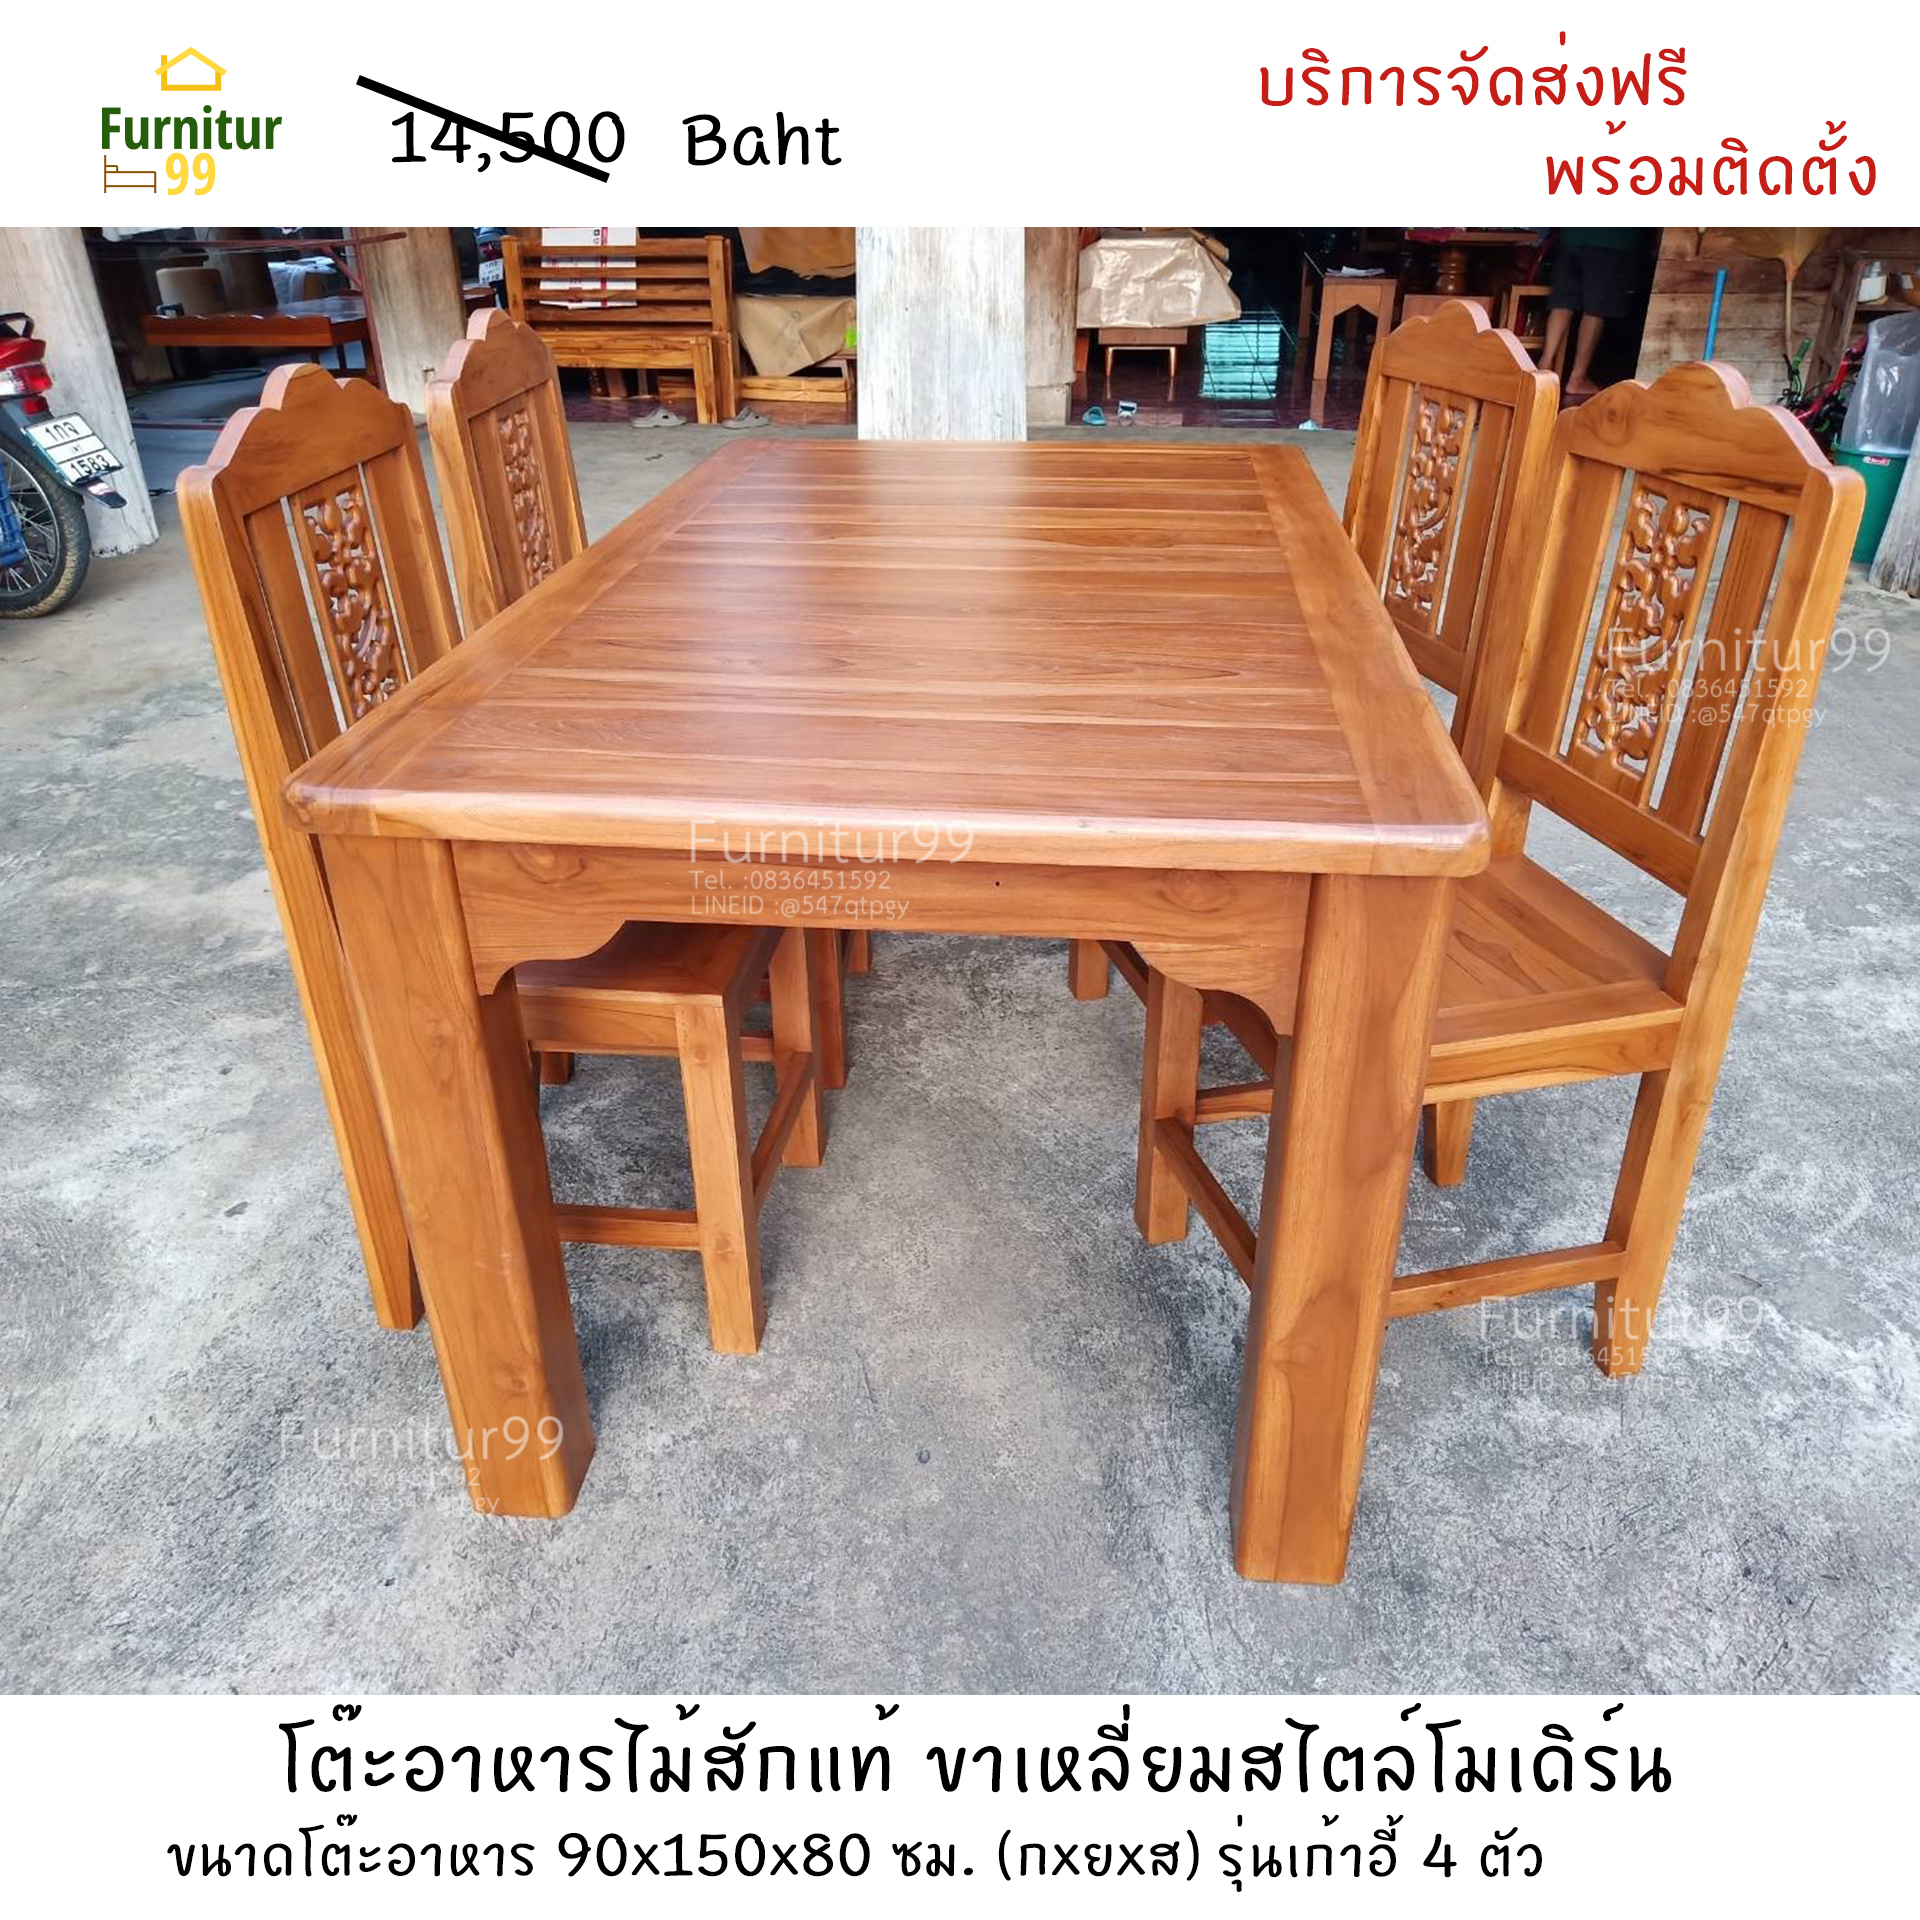 Furnitur99 ชุดโต๊ะอาหาร4ที่นั่ง โต๊ะทานอาหาร โต๊ะอาหารไม้สัก โต๊ะทานข้าว โต๊ะกินข้าว ไม้สัก ขนาด 90x150x80 ซม. สีไม้สัก บริการจัดส่งทั่วไทย